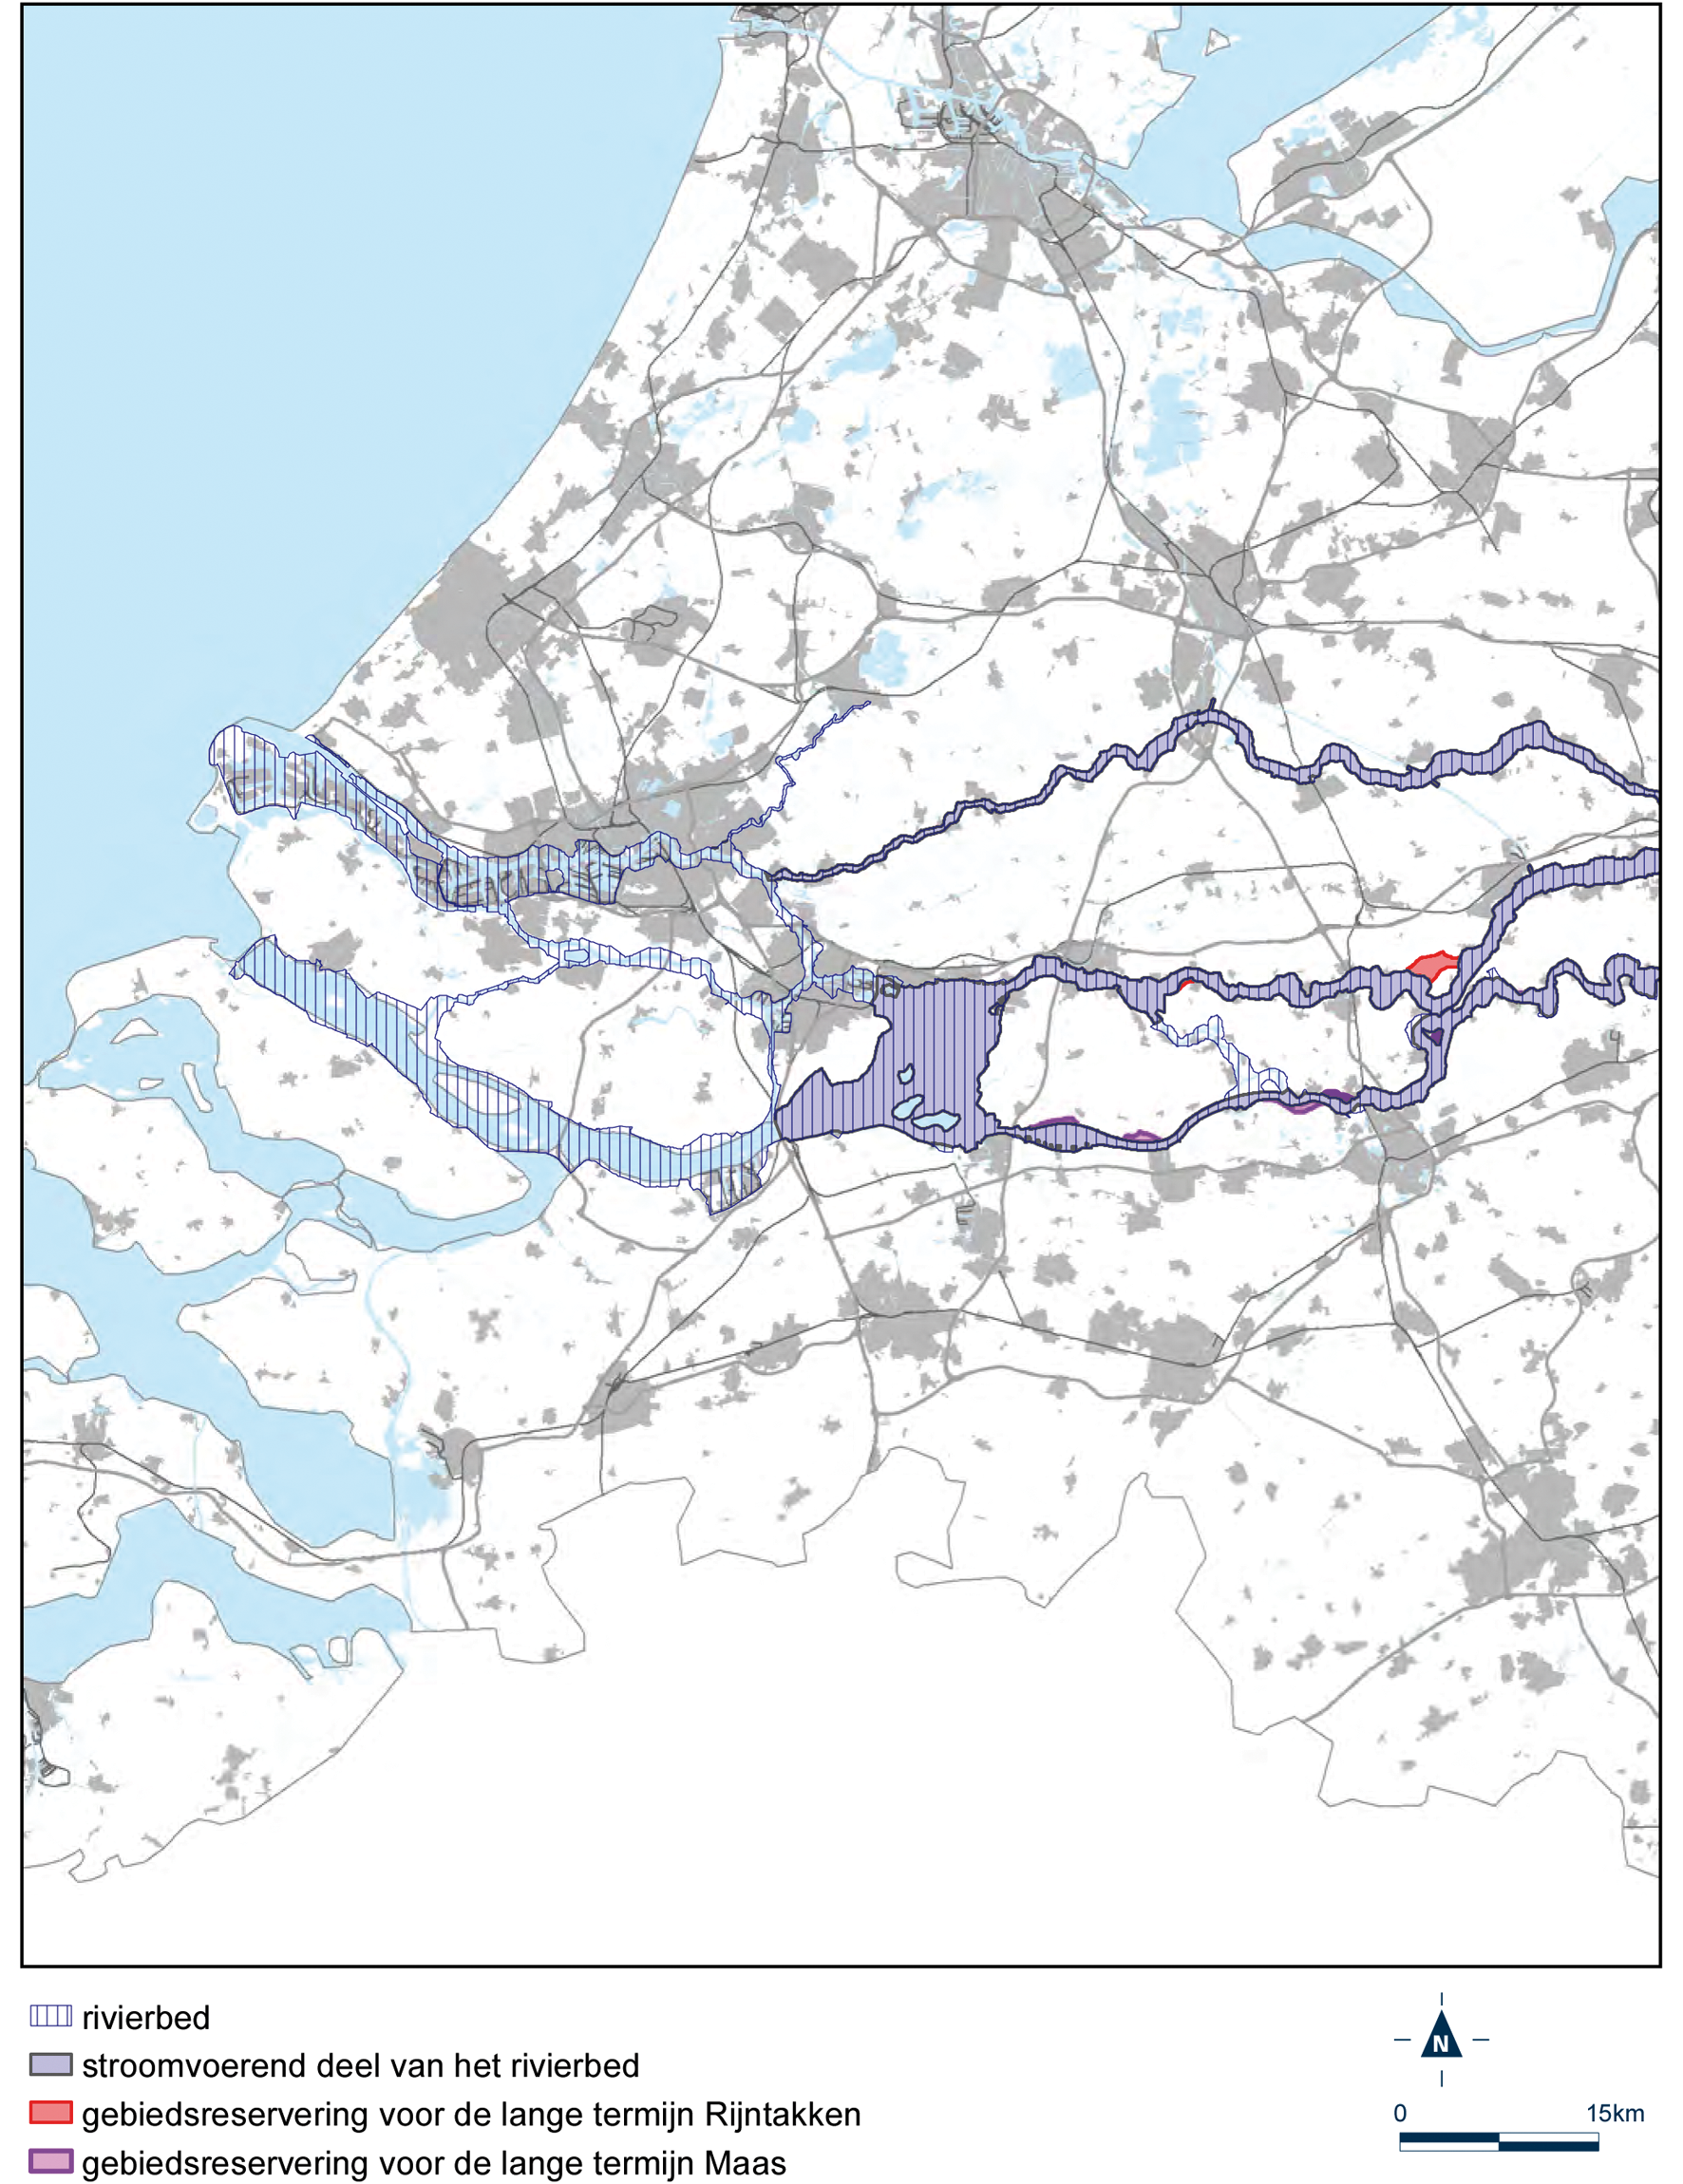 Detailkaart grote rivieren west